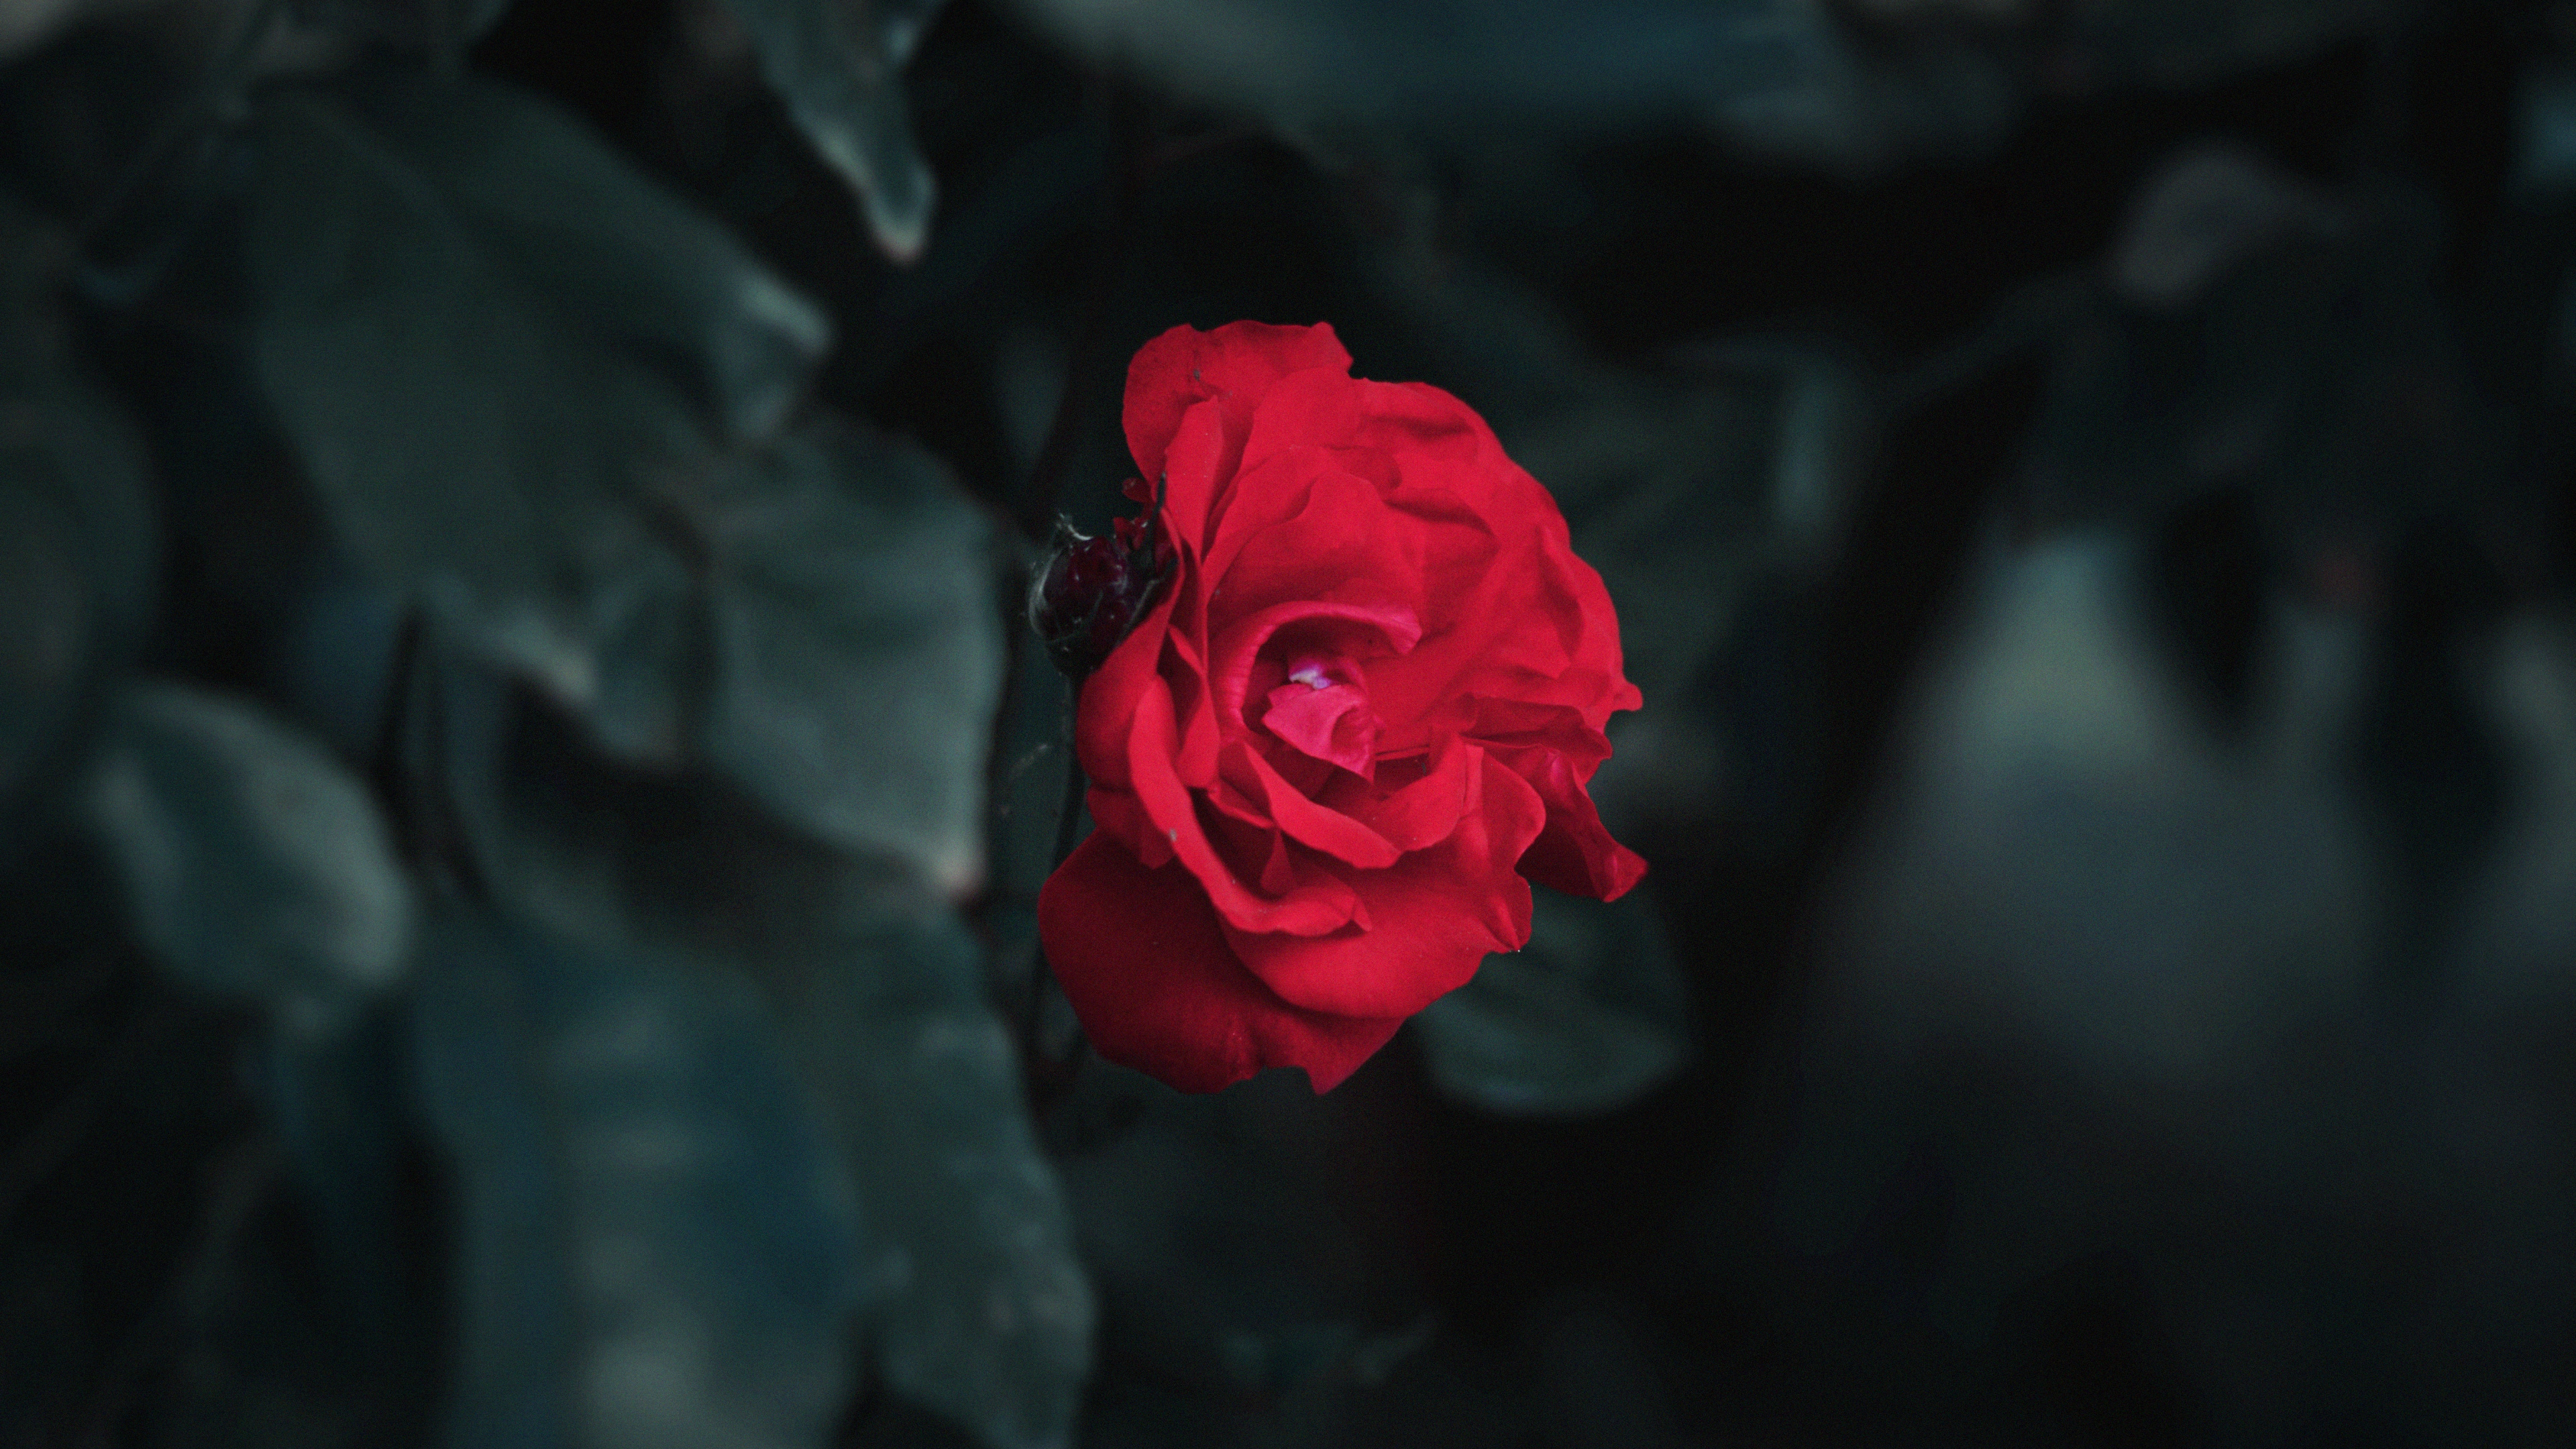 Rosa Roja en Fotografía de Cerca. Wallpaper in 3840x2160 Resolution